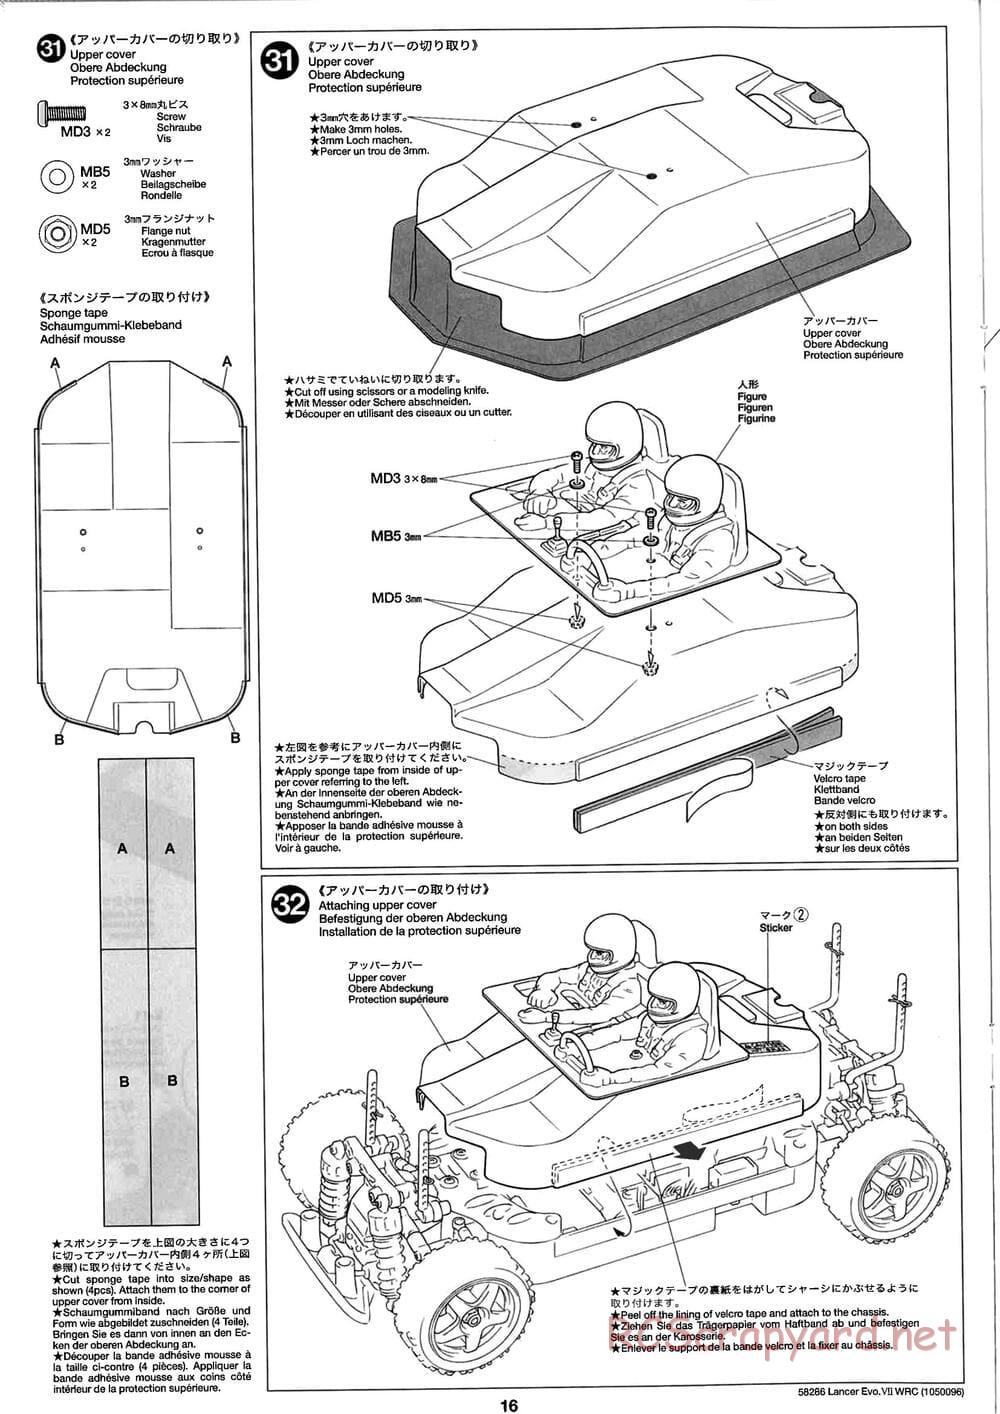 Tamiya - Mitsubishi Lancer Evolution VII WRC - TB-01 Chassis - Manual - Page 16